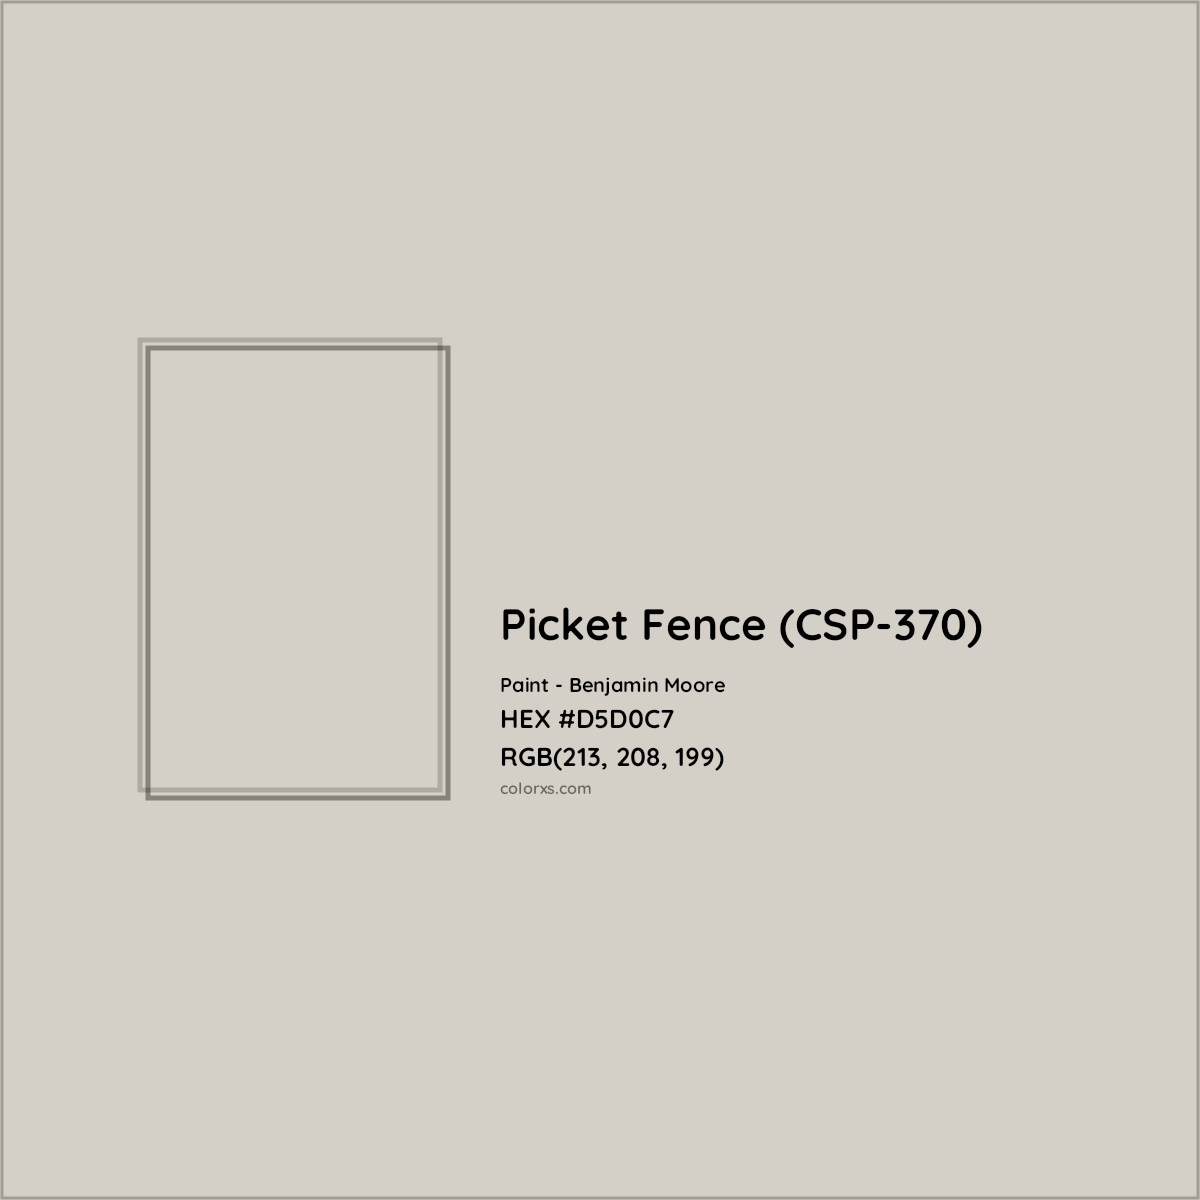 HEX #D5D0C7 Picket Fence (CSP-370) Paint Benjamin Moore - Color Code